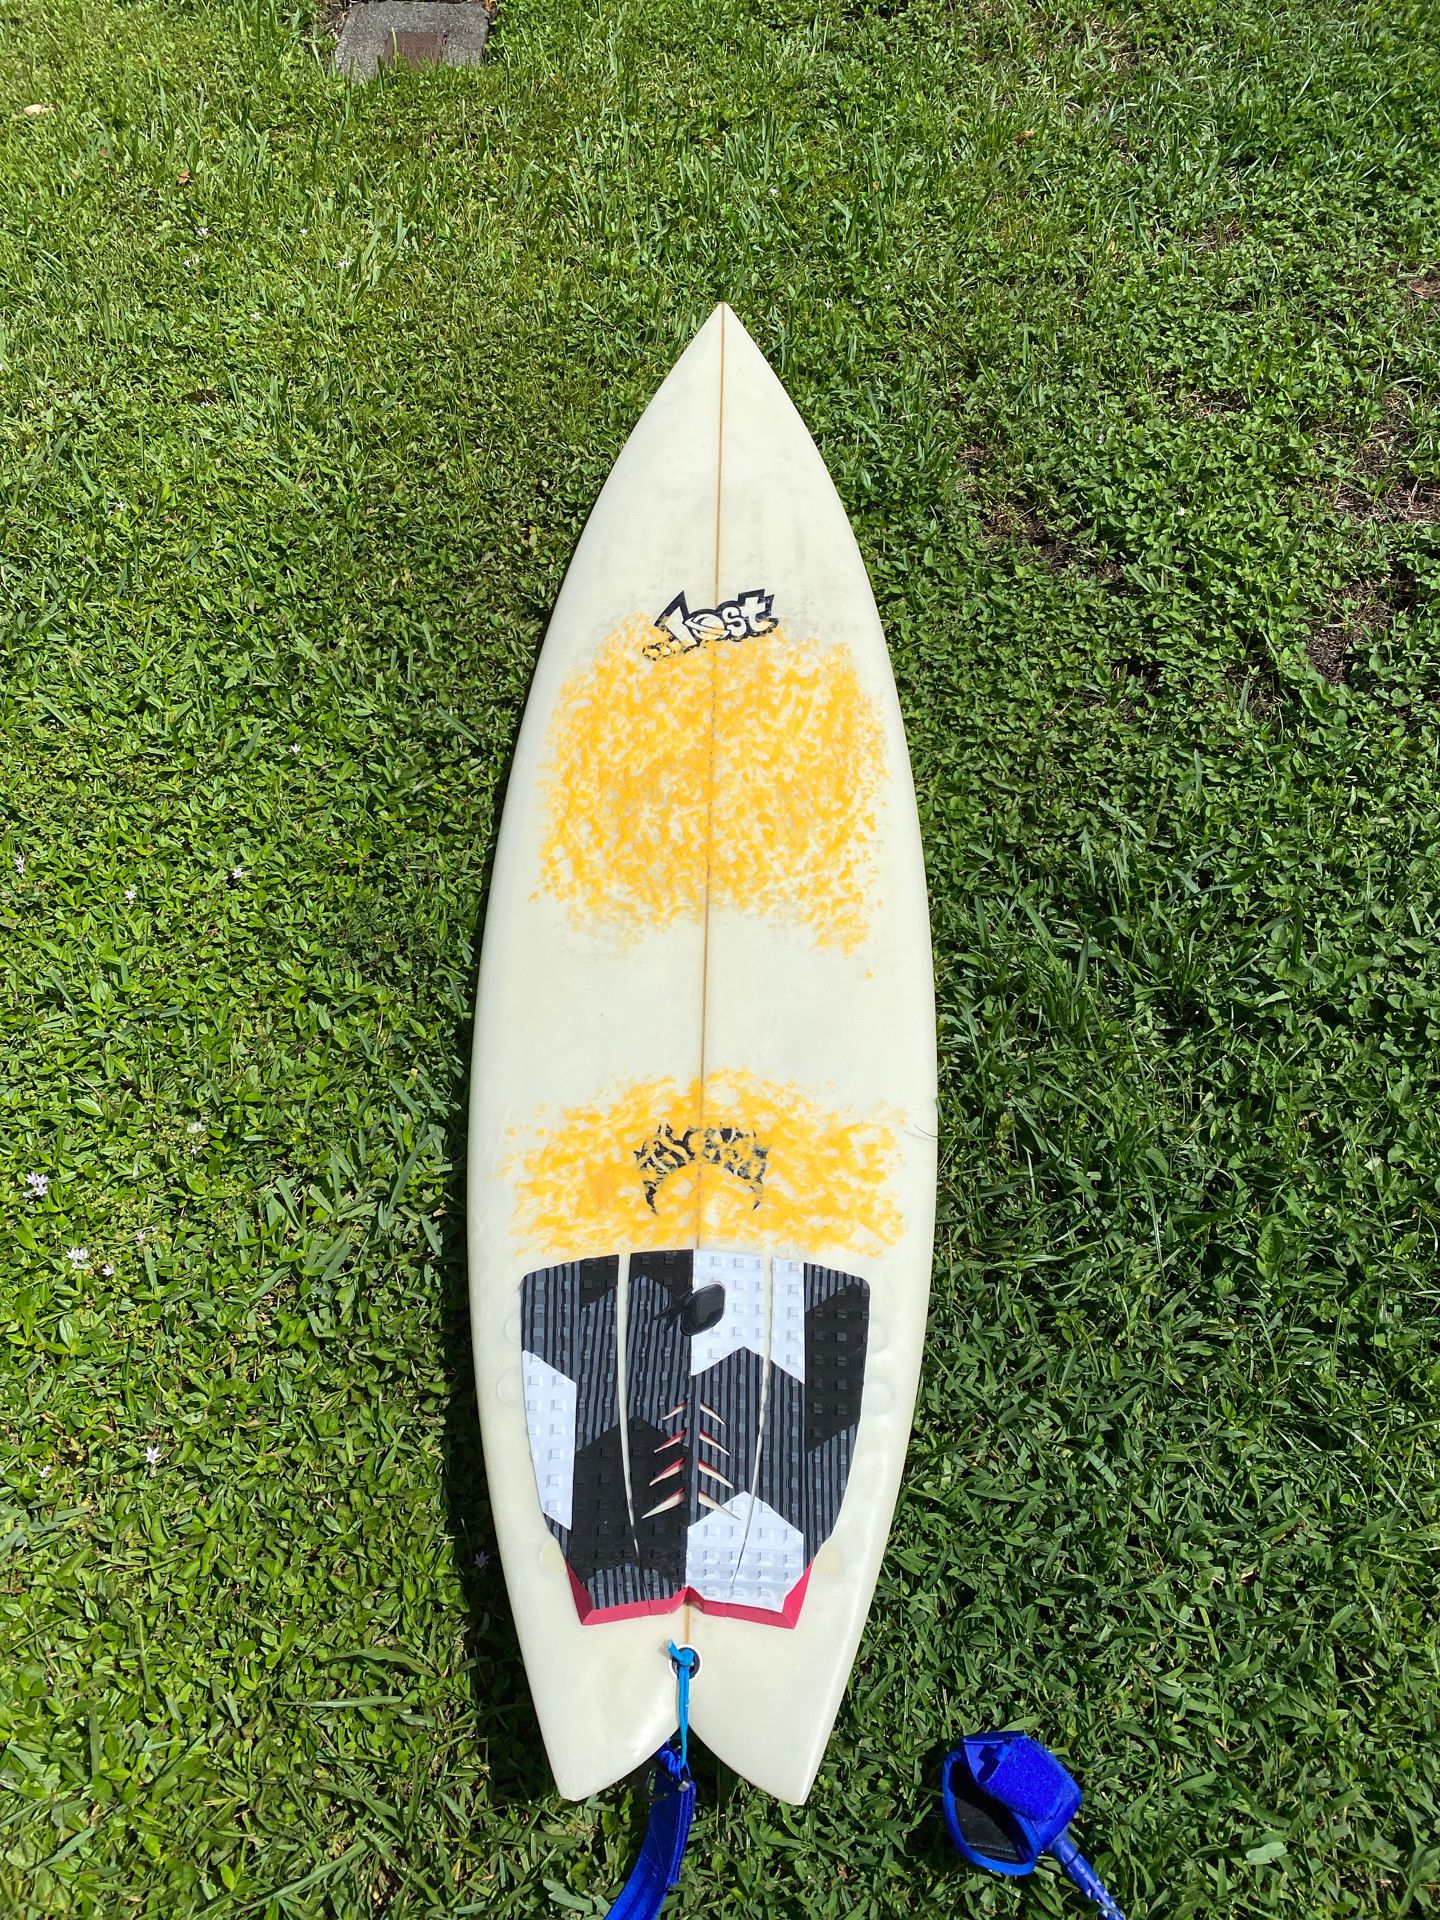 Lost 6 foot surfboard. Like new